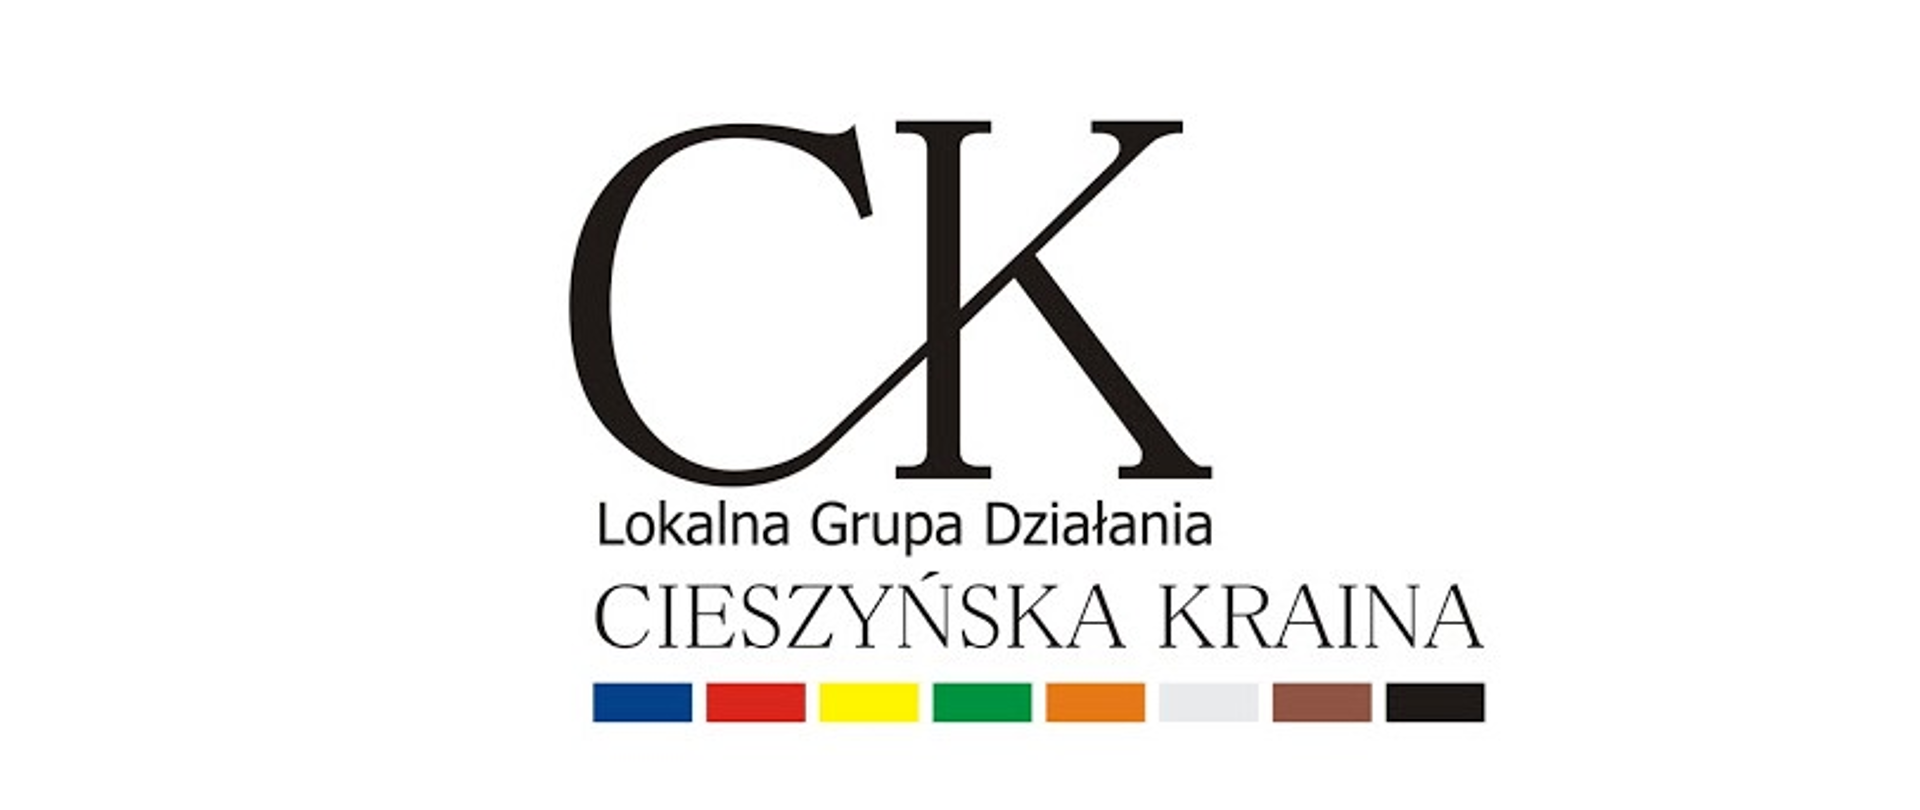 Logotyp Lokalnej Grupy Działania "Cieszyńska Kraina"